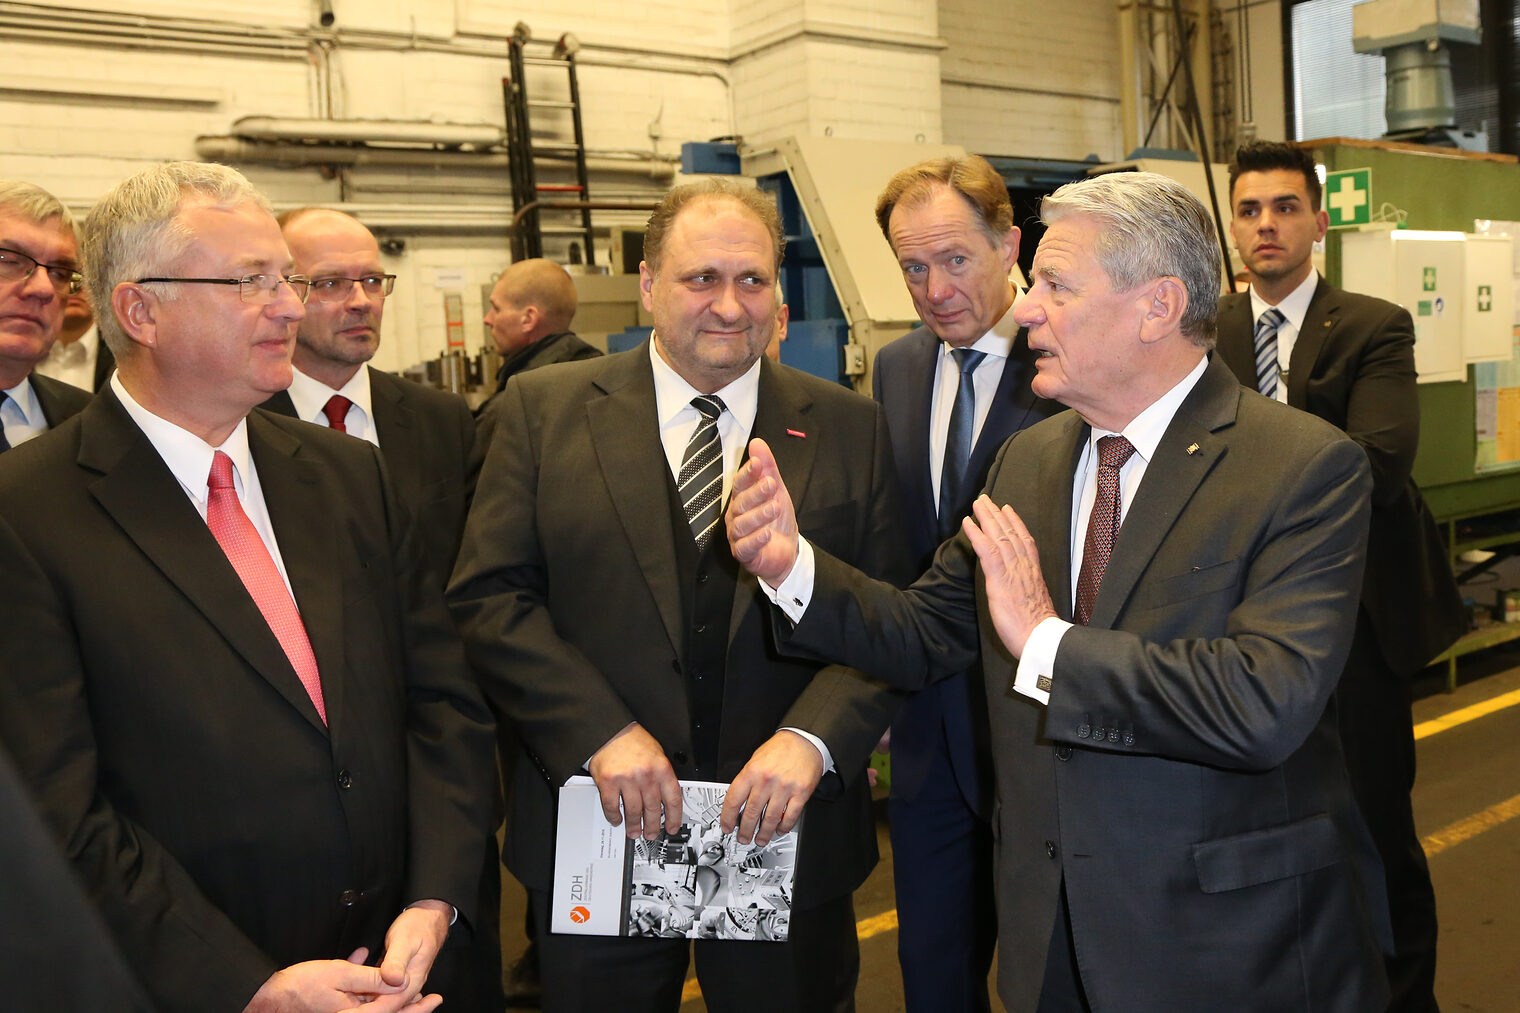 Bundespräsident Joachim Gauck besucht das Handwerk 107